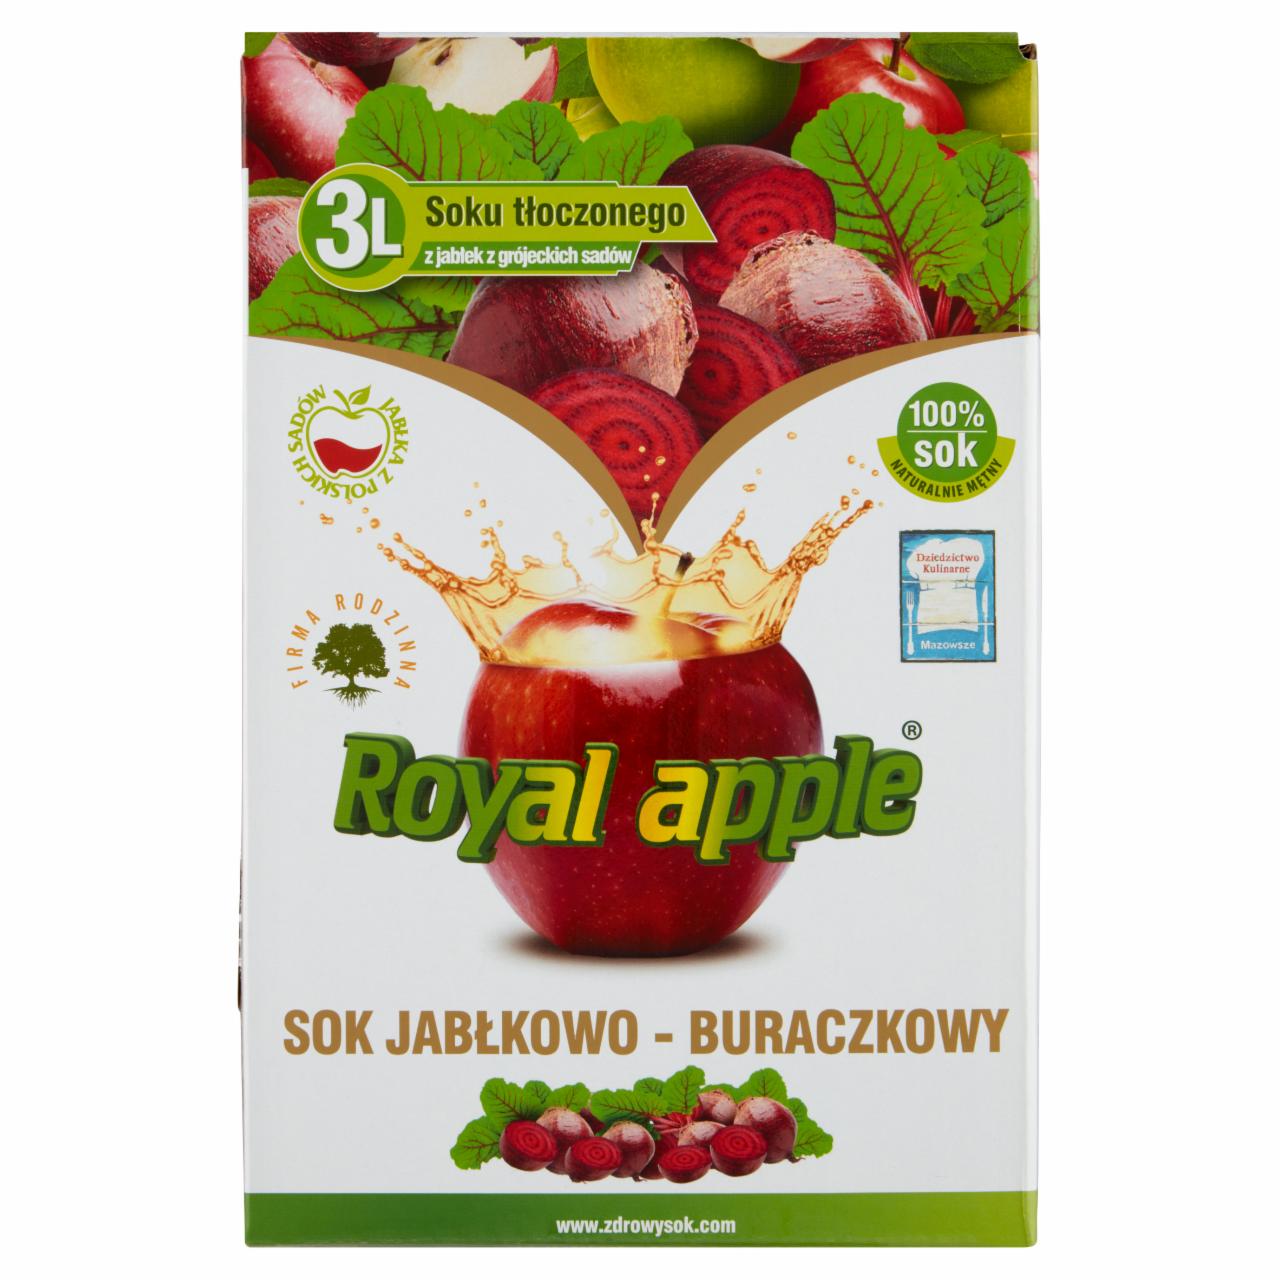 Zdjęcia - Royal apple Sok jabłkowo-buraczkowy 3 l